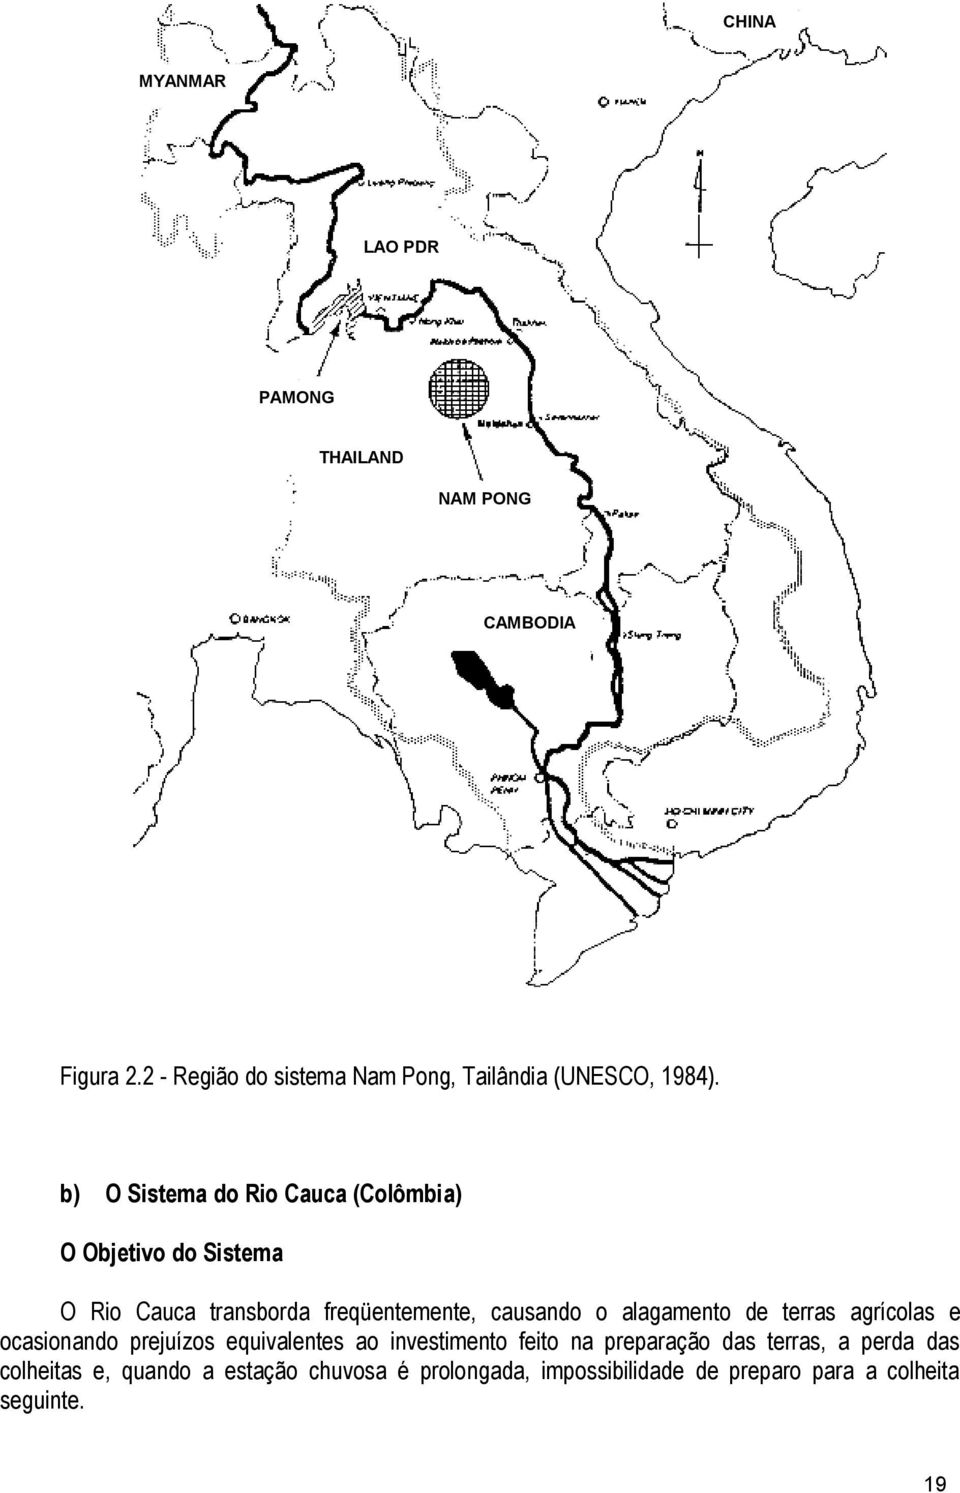 b) O Sistema do Rio Cauca (Colômbia) O Objetivo do Sistema O Rio Cauca transborda freqüentemente, causando o